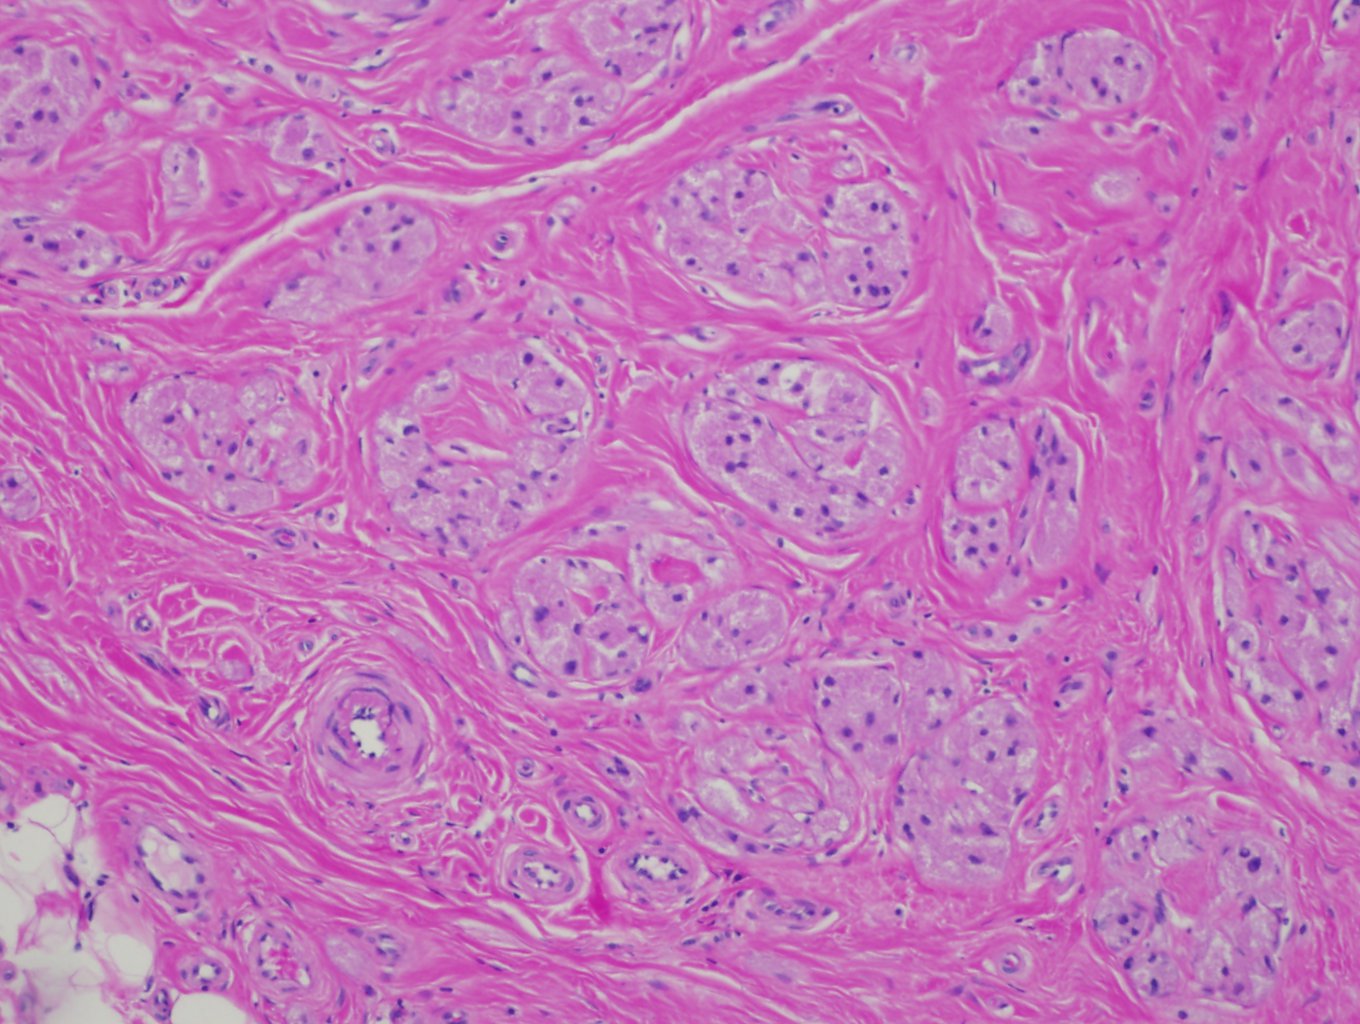 Granular Cell Tumor